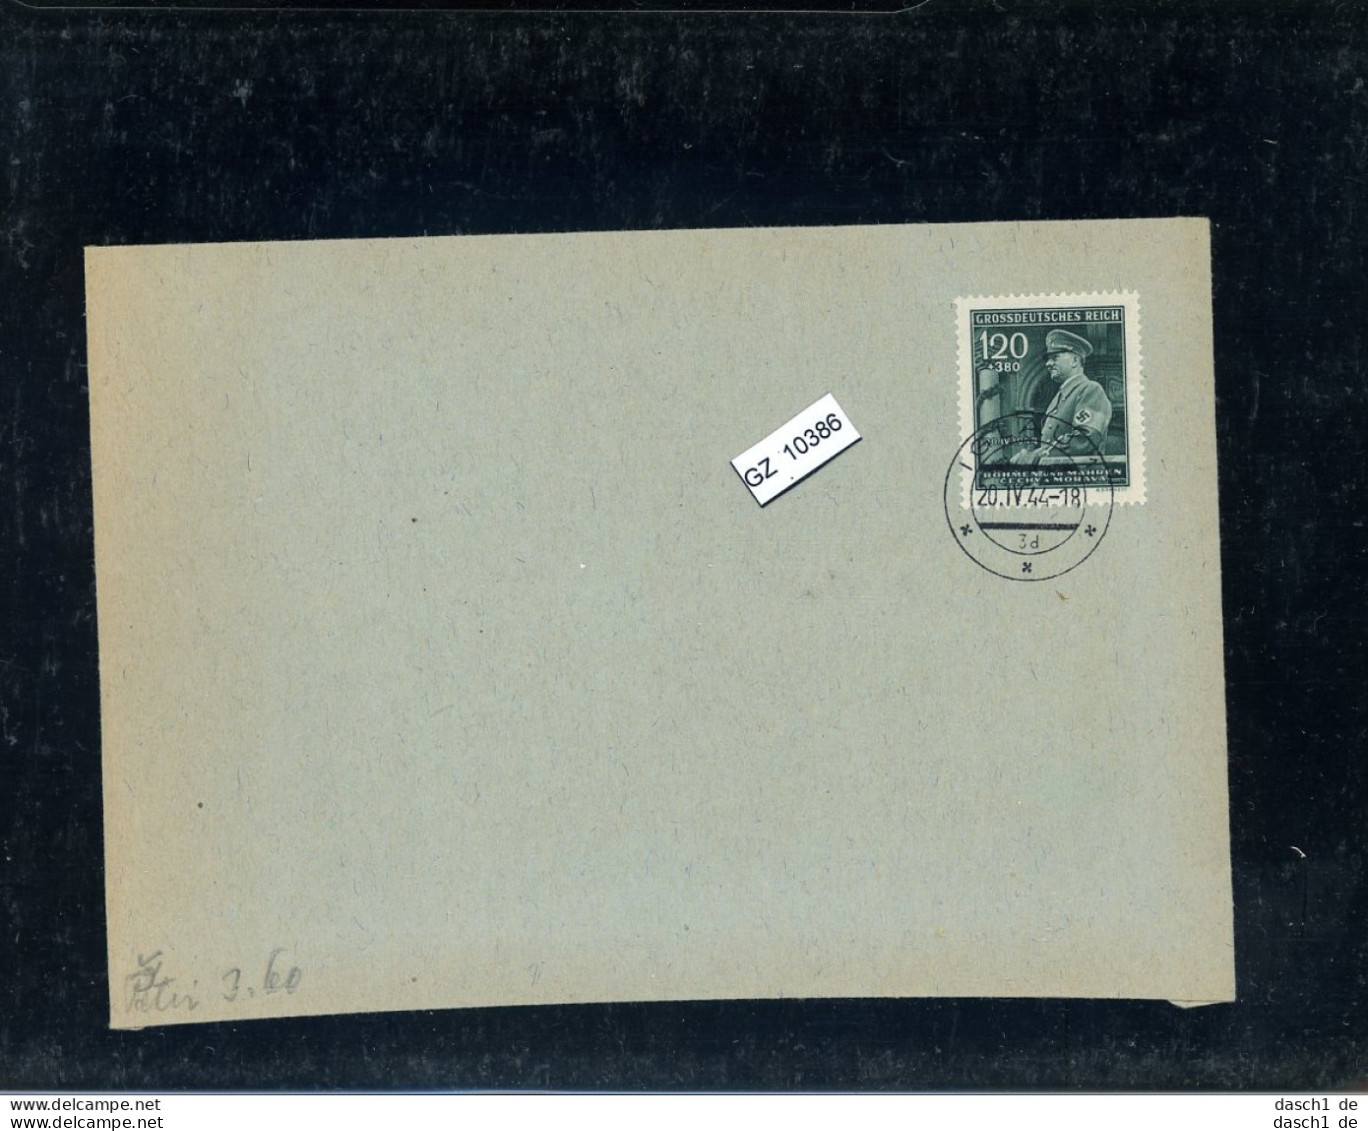 DR, Böhmen Und Mähren 137 Auf Umschlag - Storia Postale